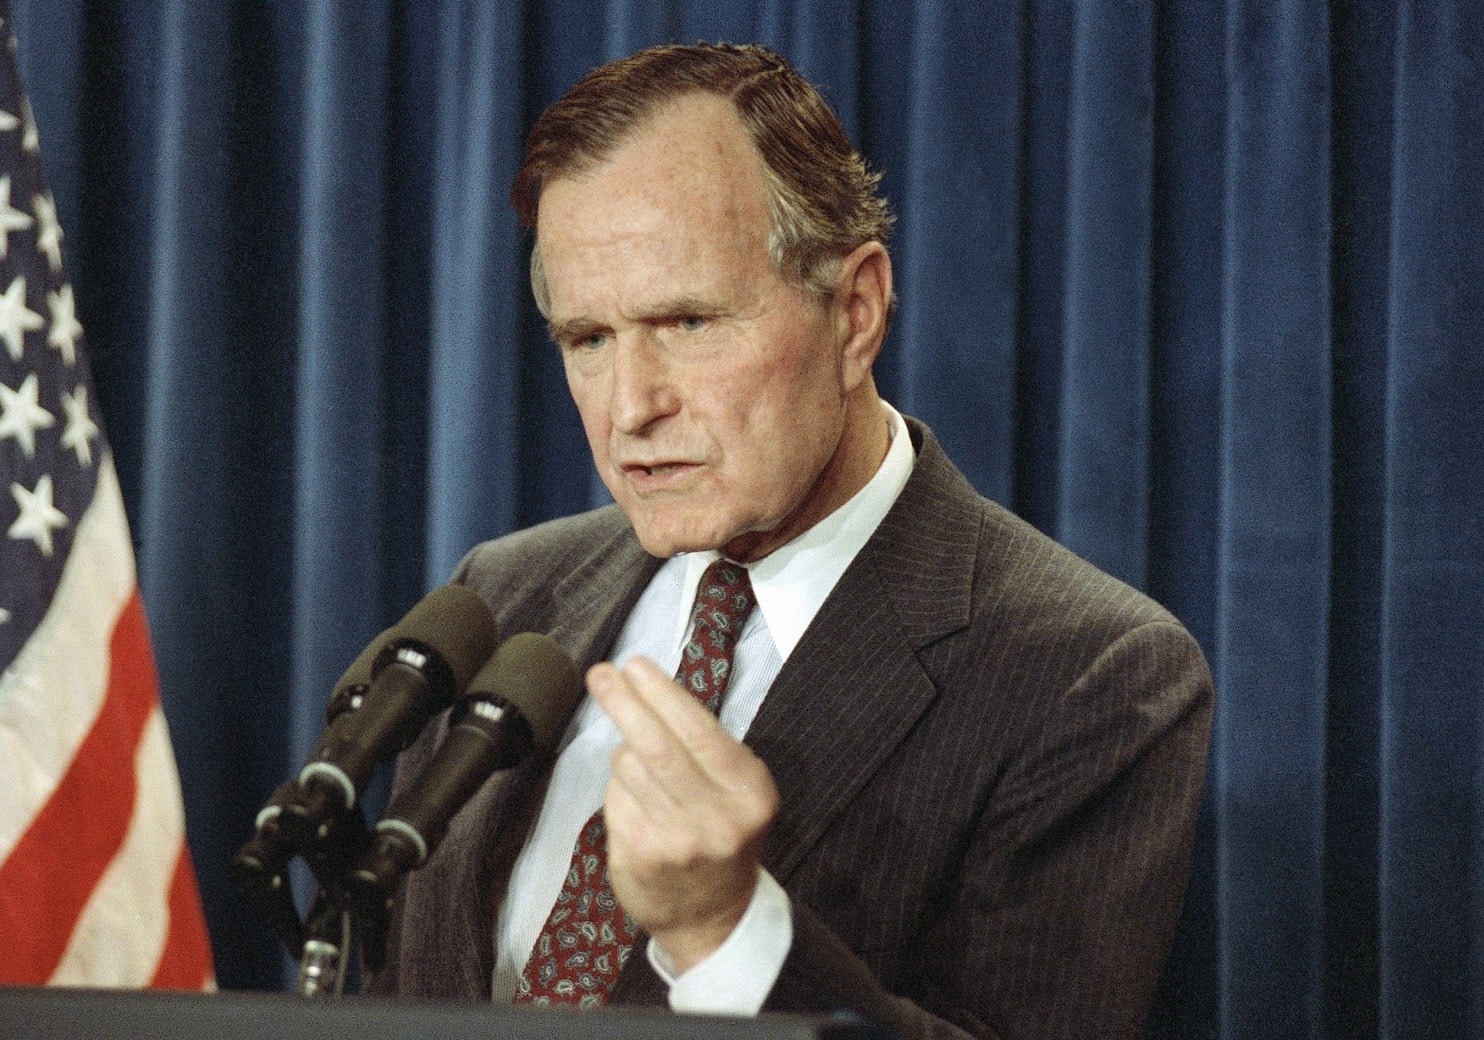 另据美国广播公司消息,在老布什离世后,他的儿子,前任美国总统小布什